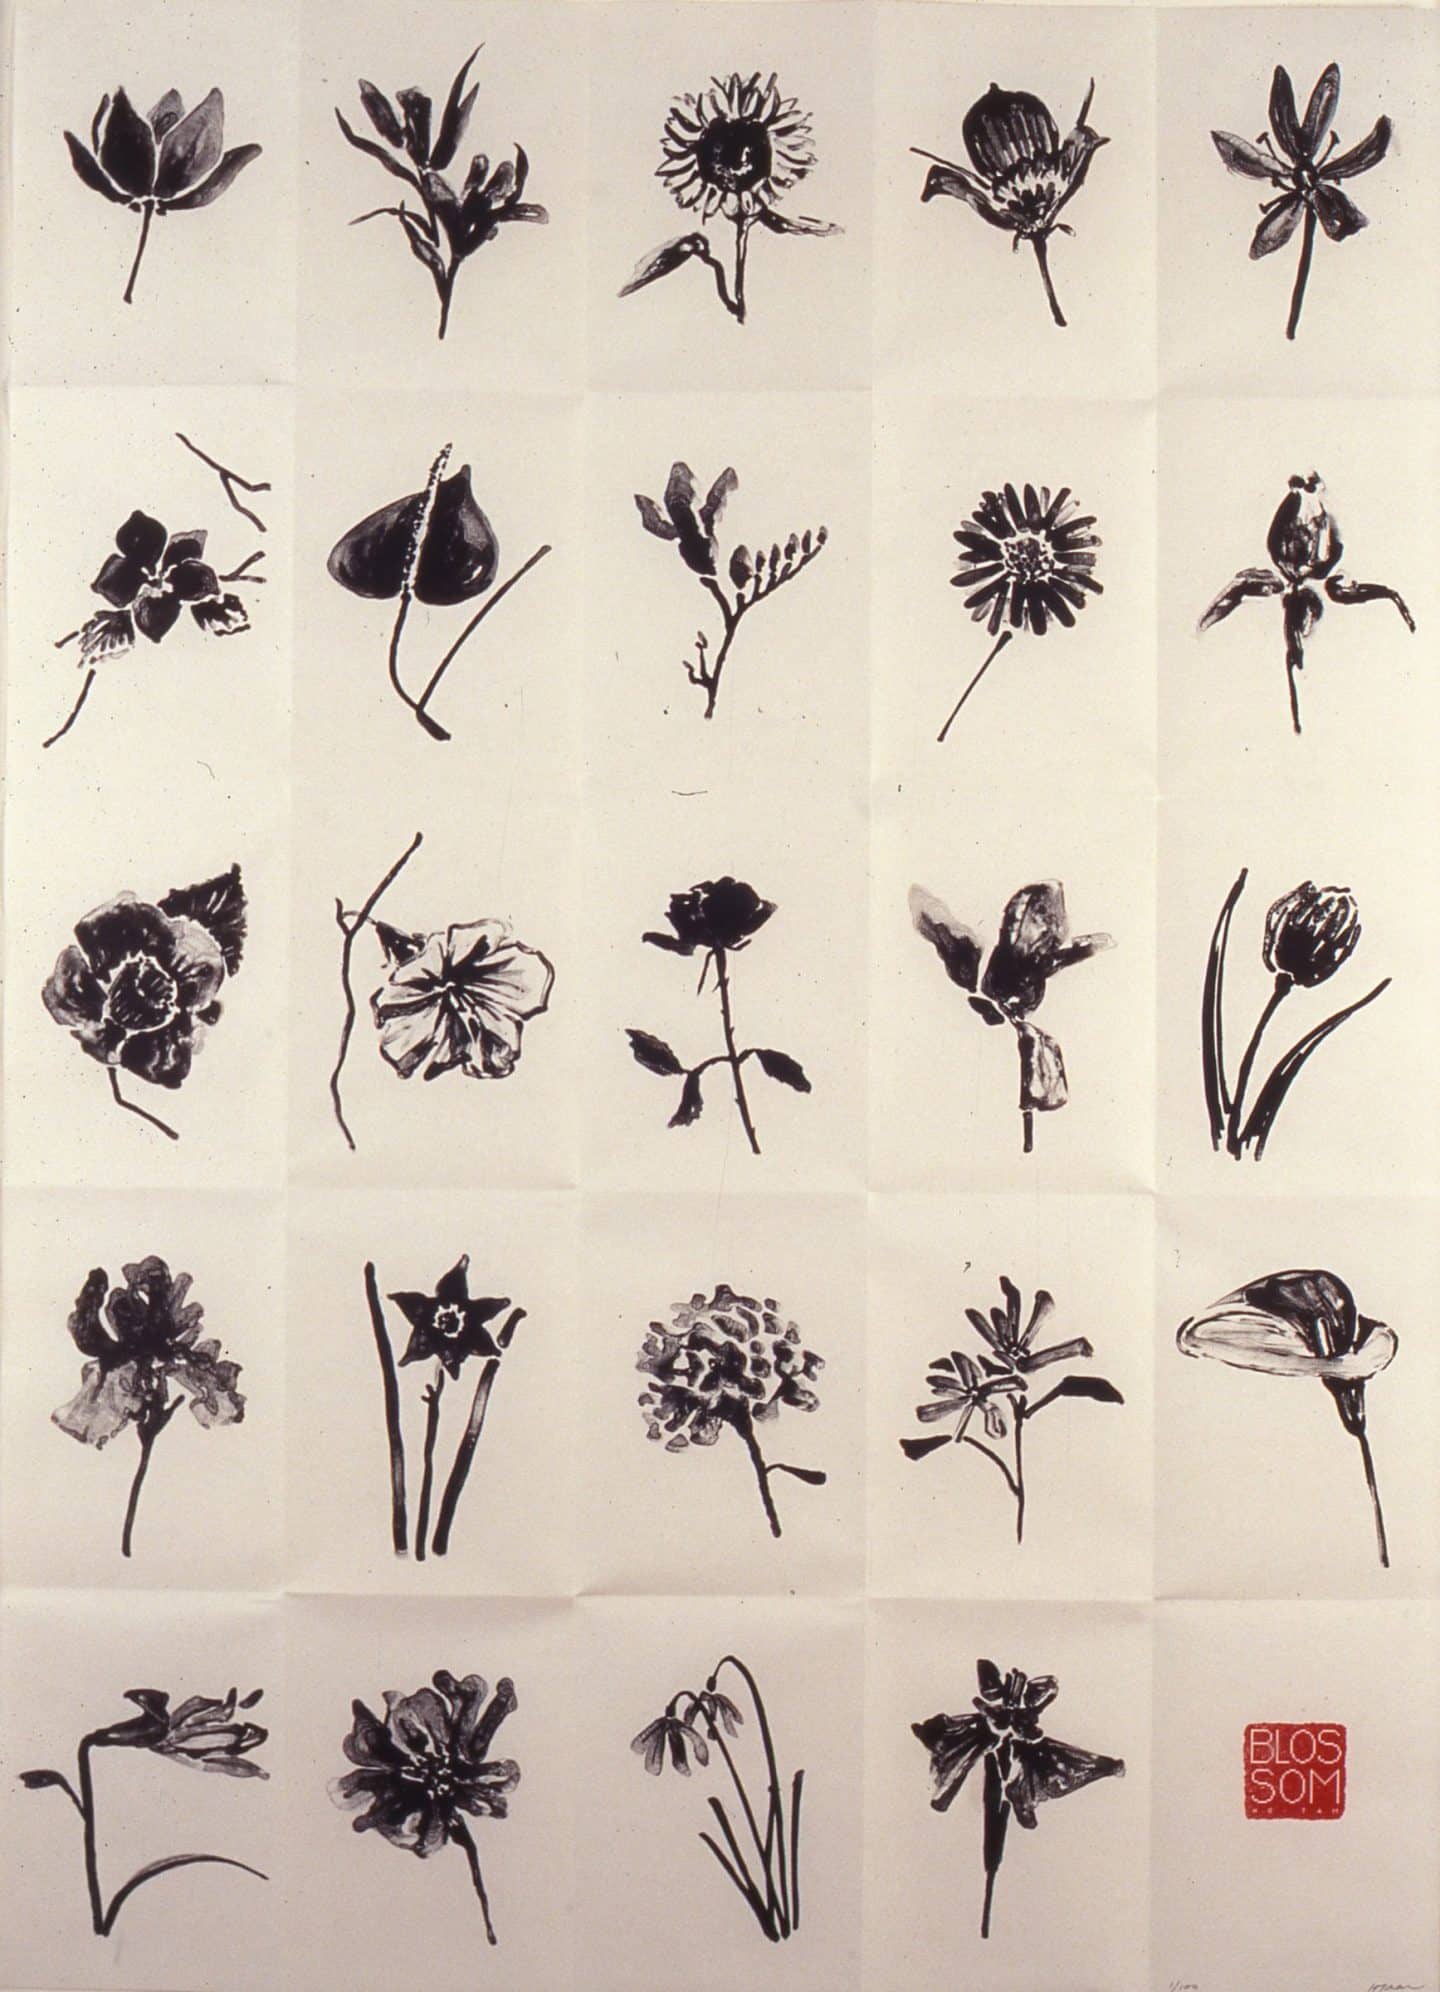 Ho Tam, Blossom, 1996, ink, paper, wood. Gift of Herbert Bunt, 1997 (40-009.03)